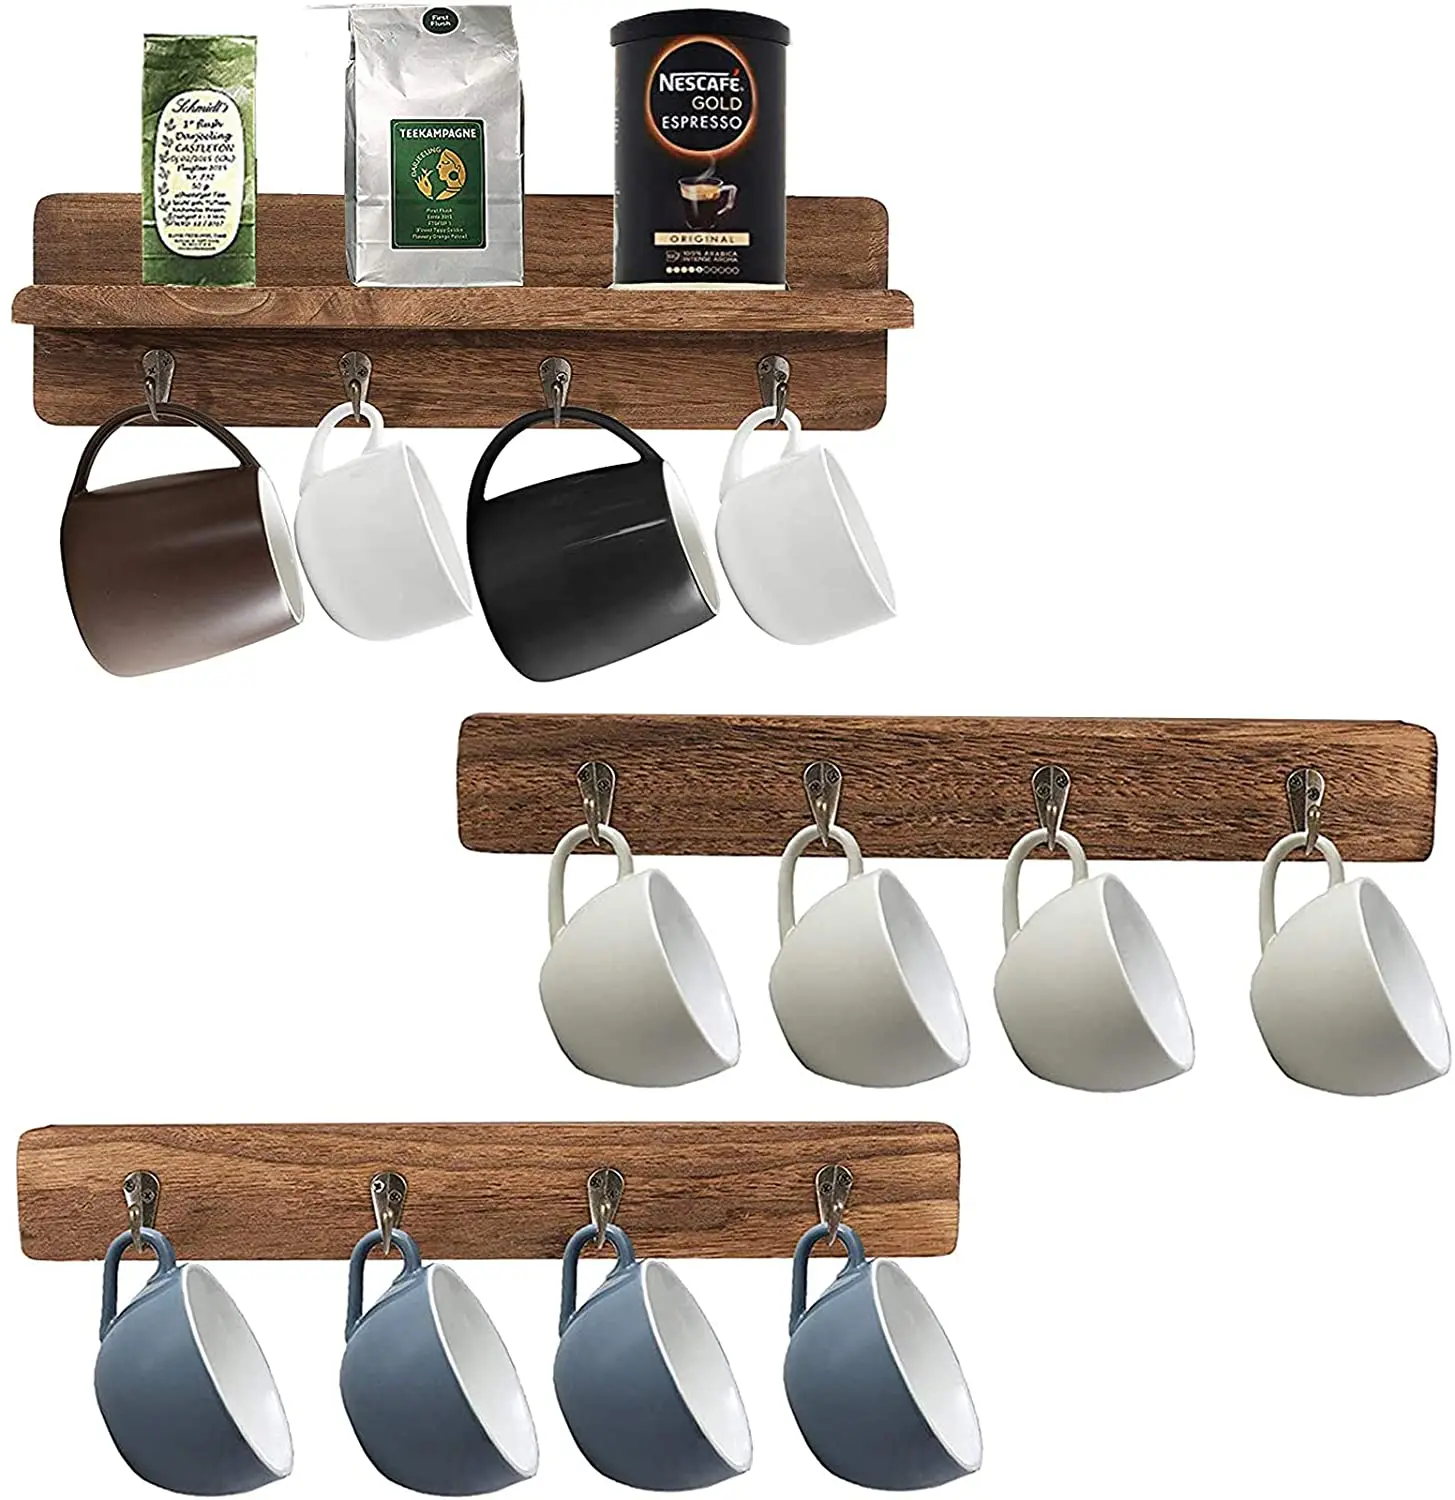 juego de cocina para 4 tazas de café estante de almacenamiento de madera Soporte para taza de café soporte de madera soporte tazas soporte accesorios de cocina con ganchos de metal 